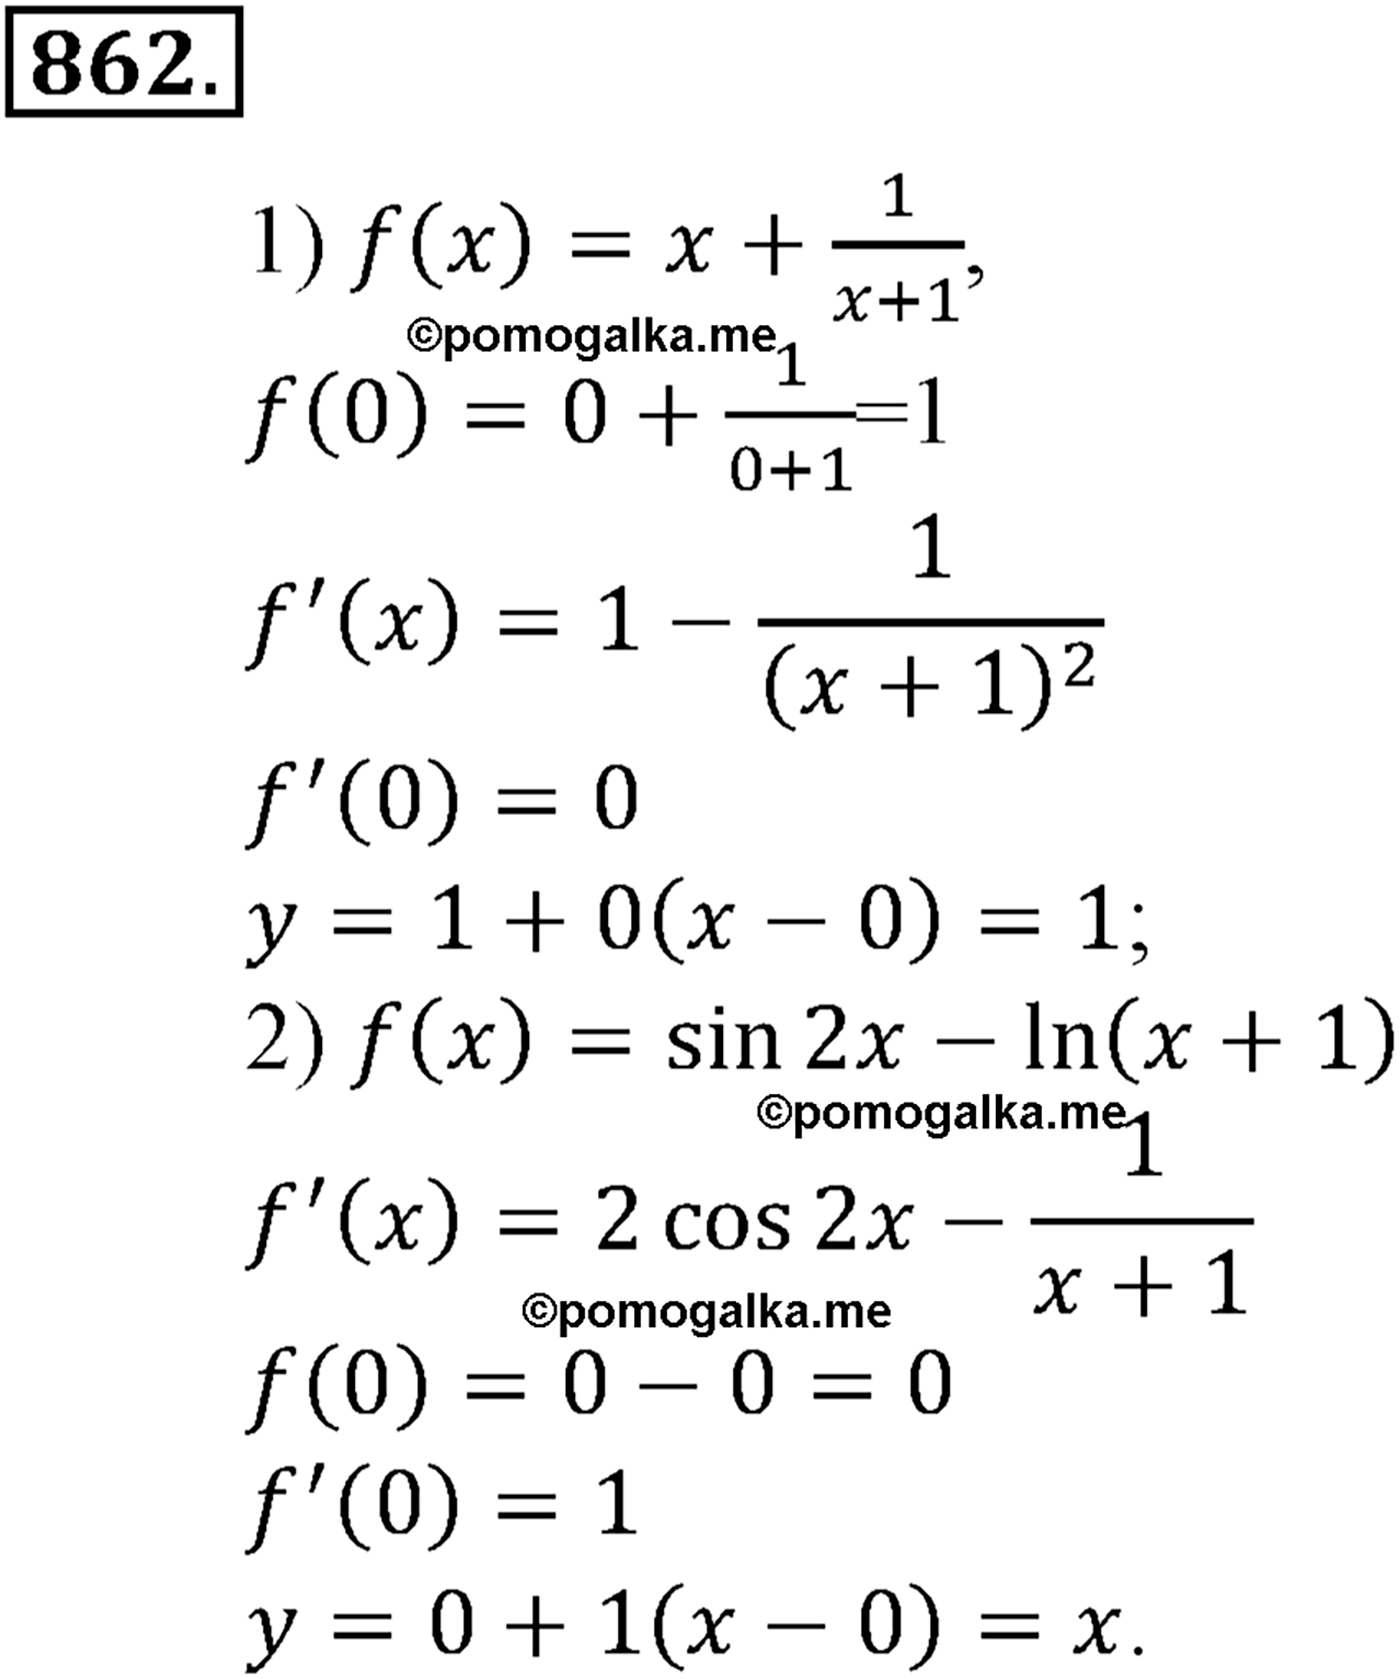 разбор задачи №862 по алгебре за 10-11 класс из учебника Алимова, Колягина